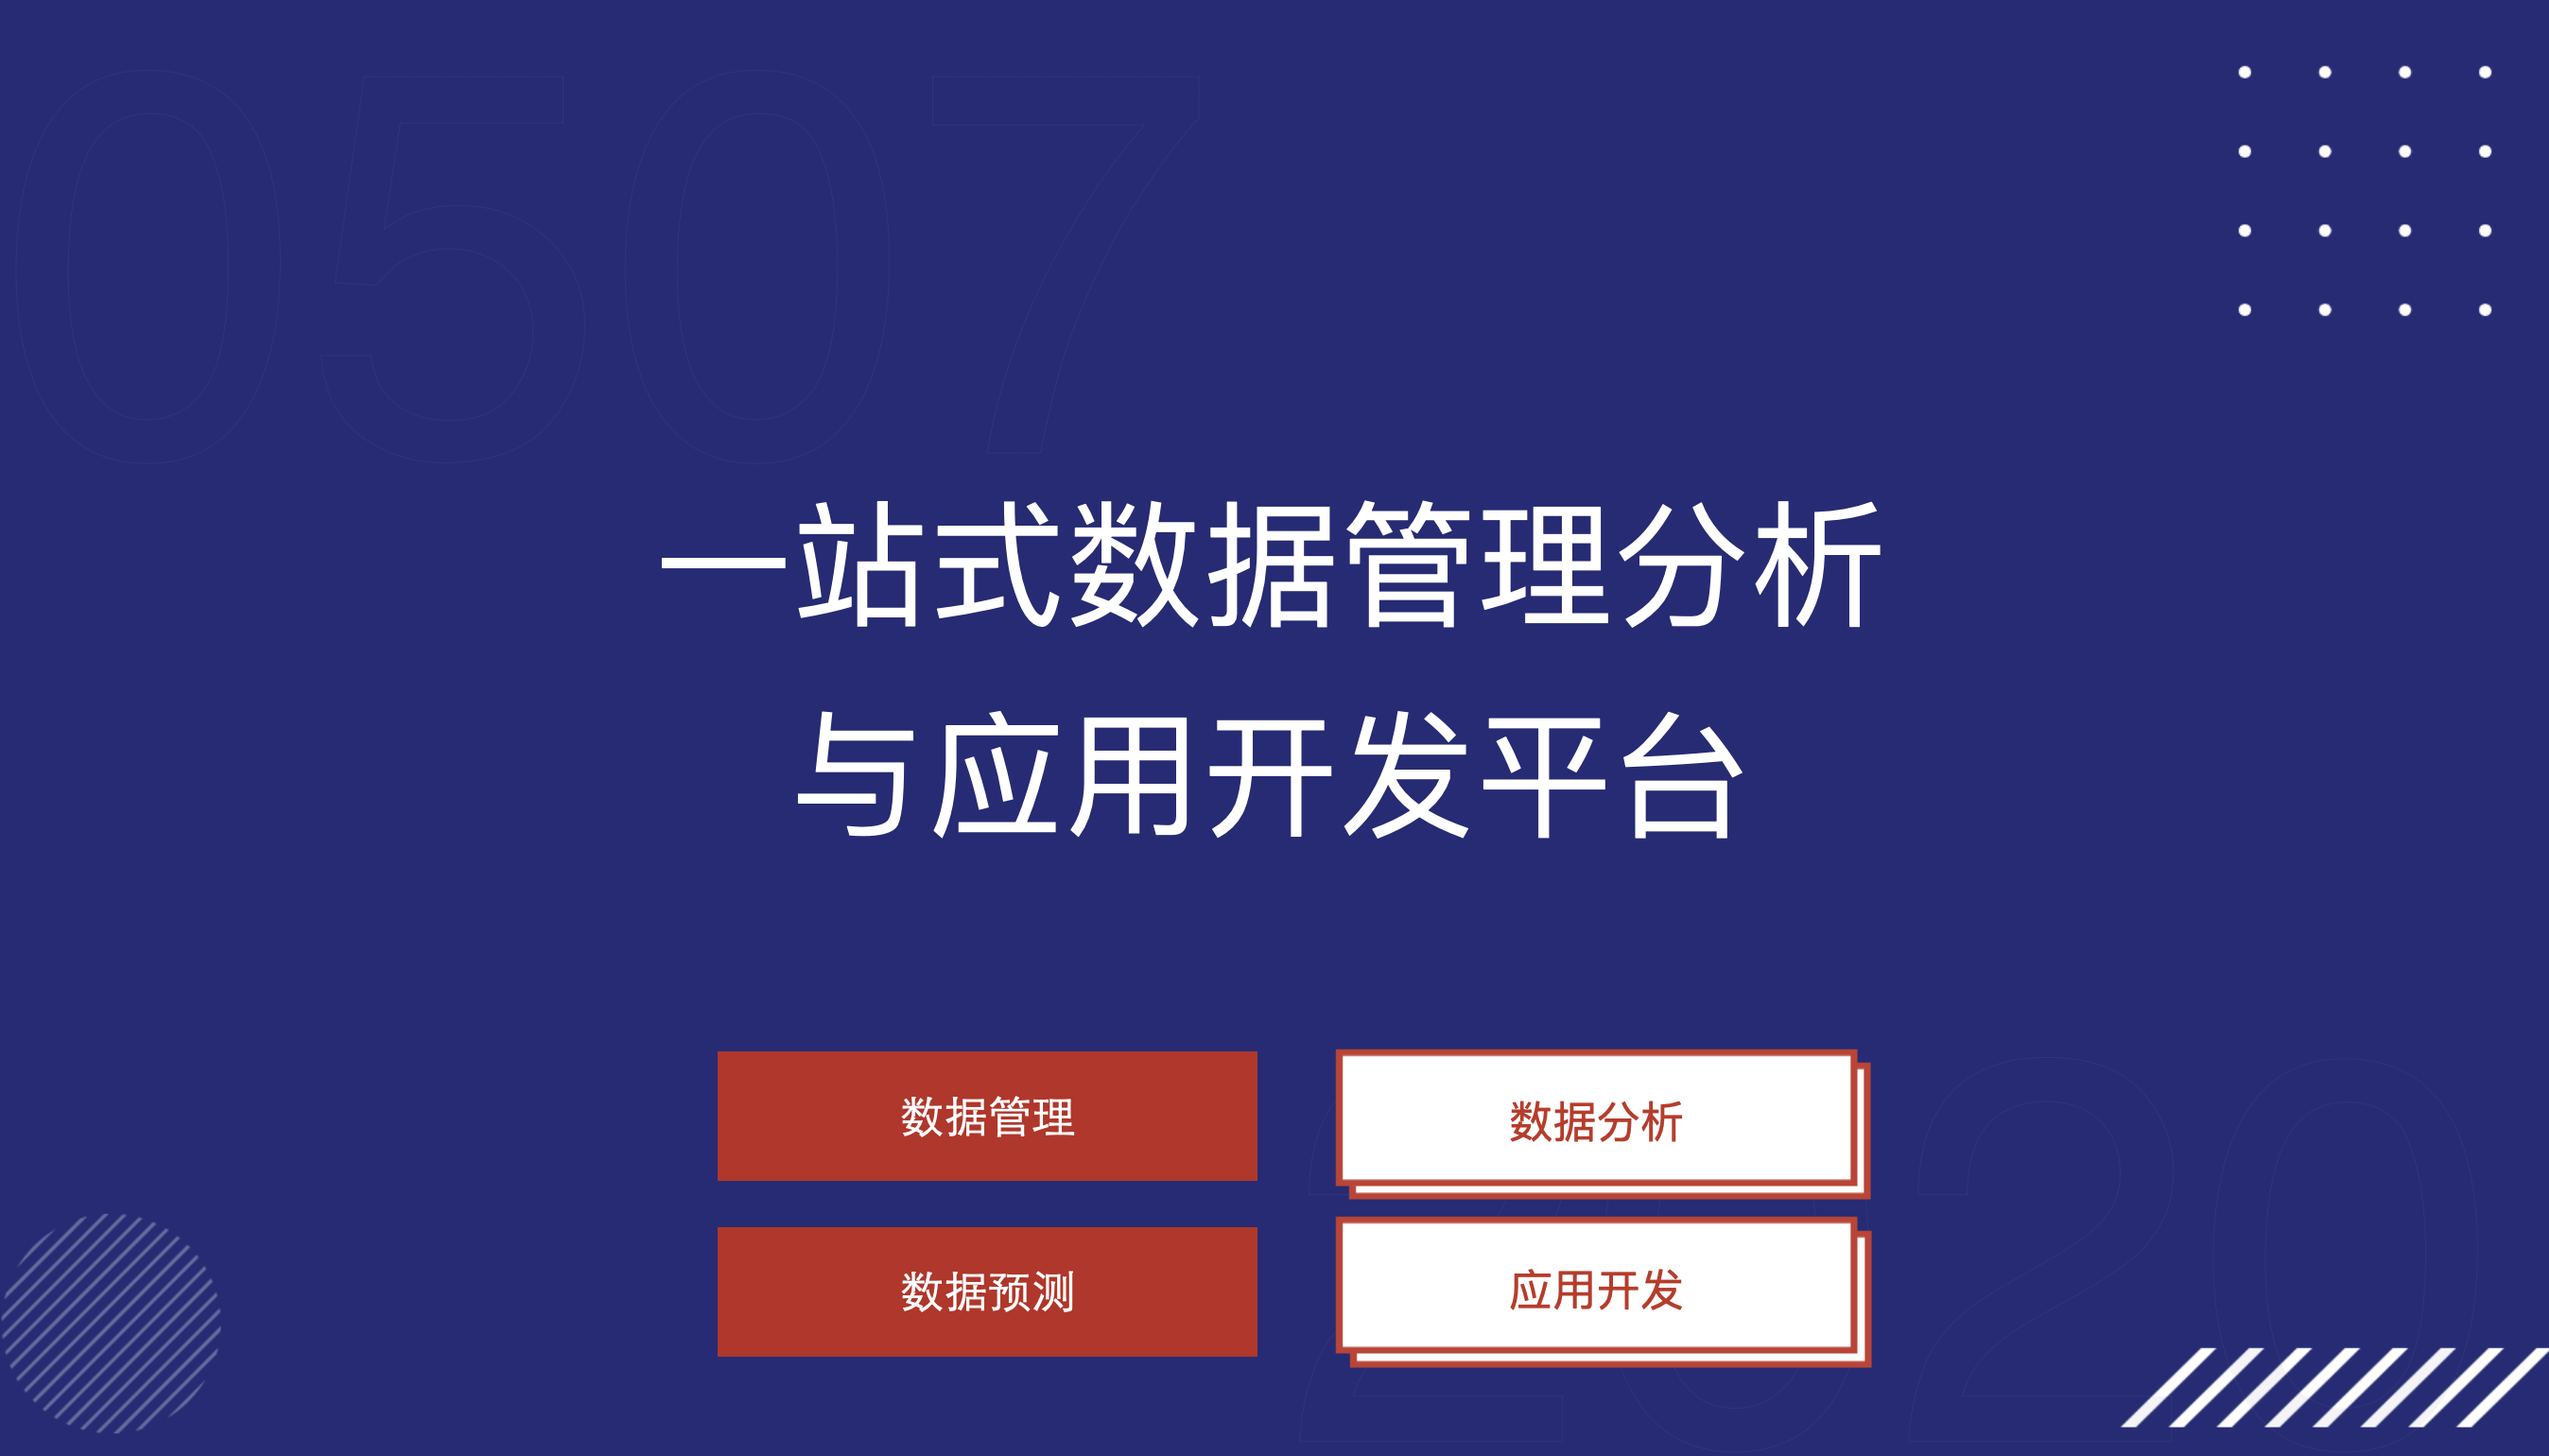 上海低代码公司-低代码团体标准发布